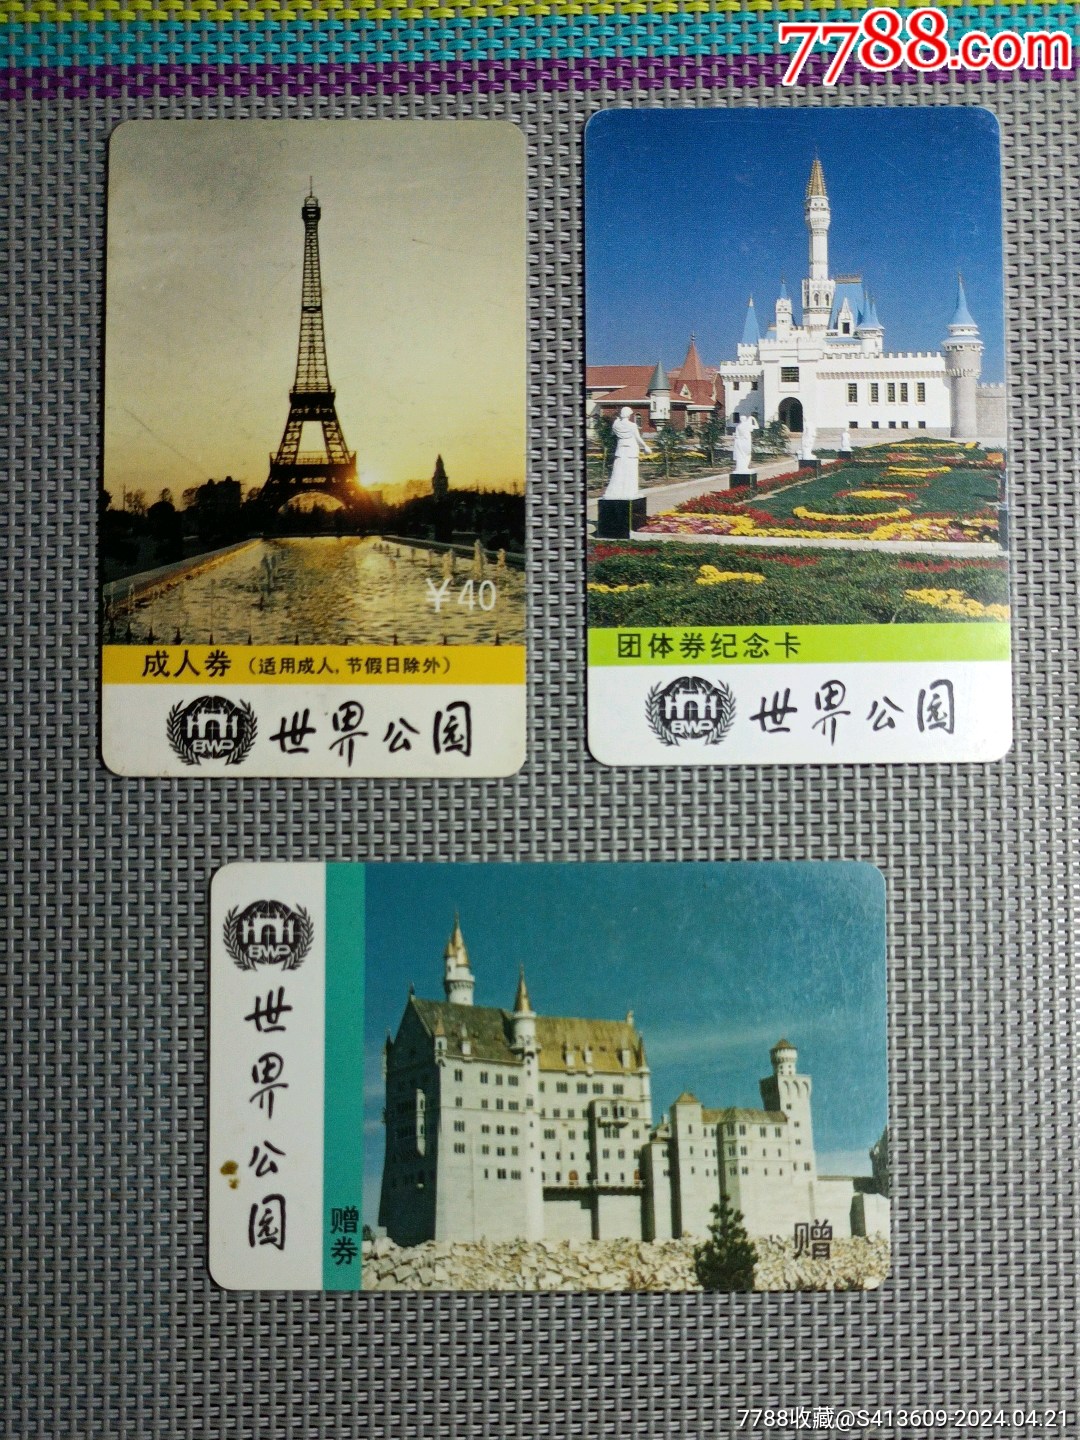 北京园林博物馆门票图片